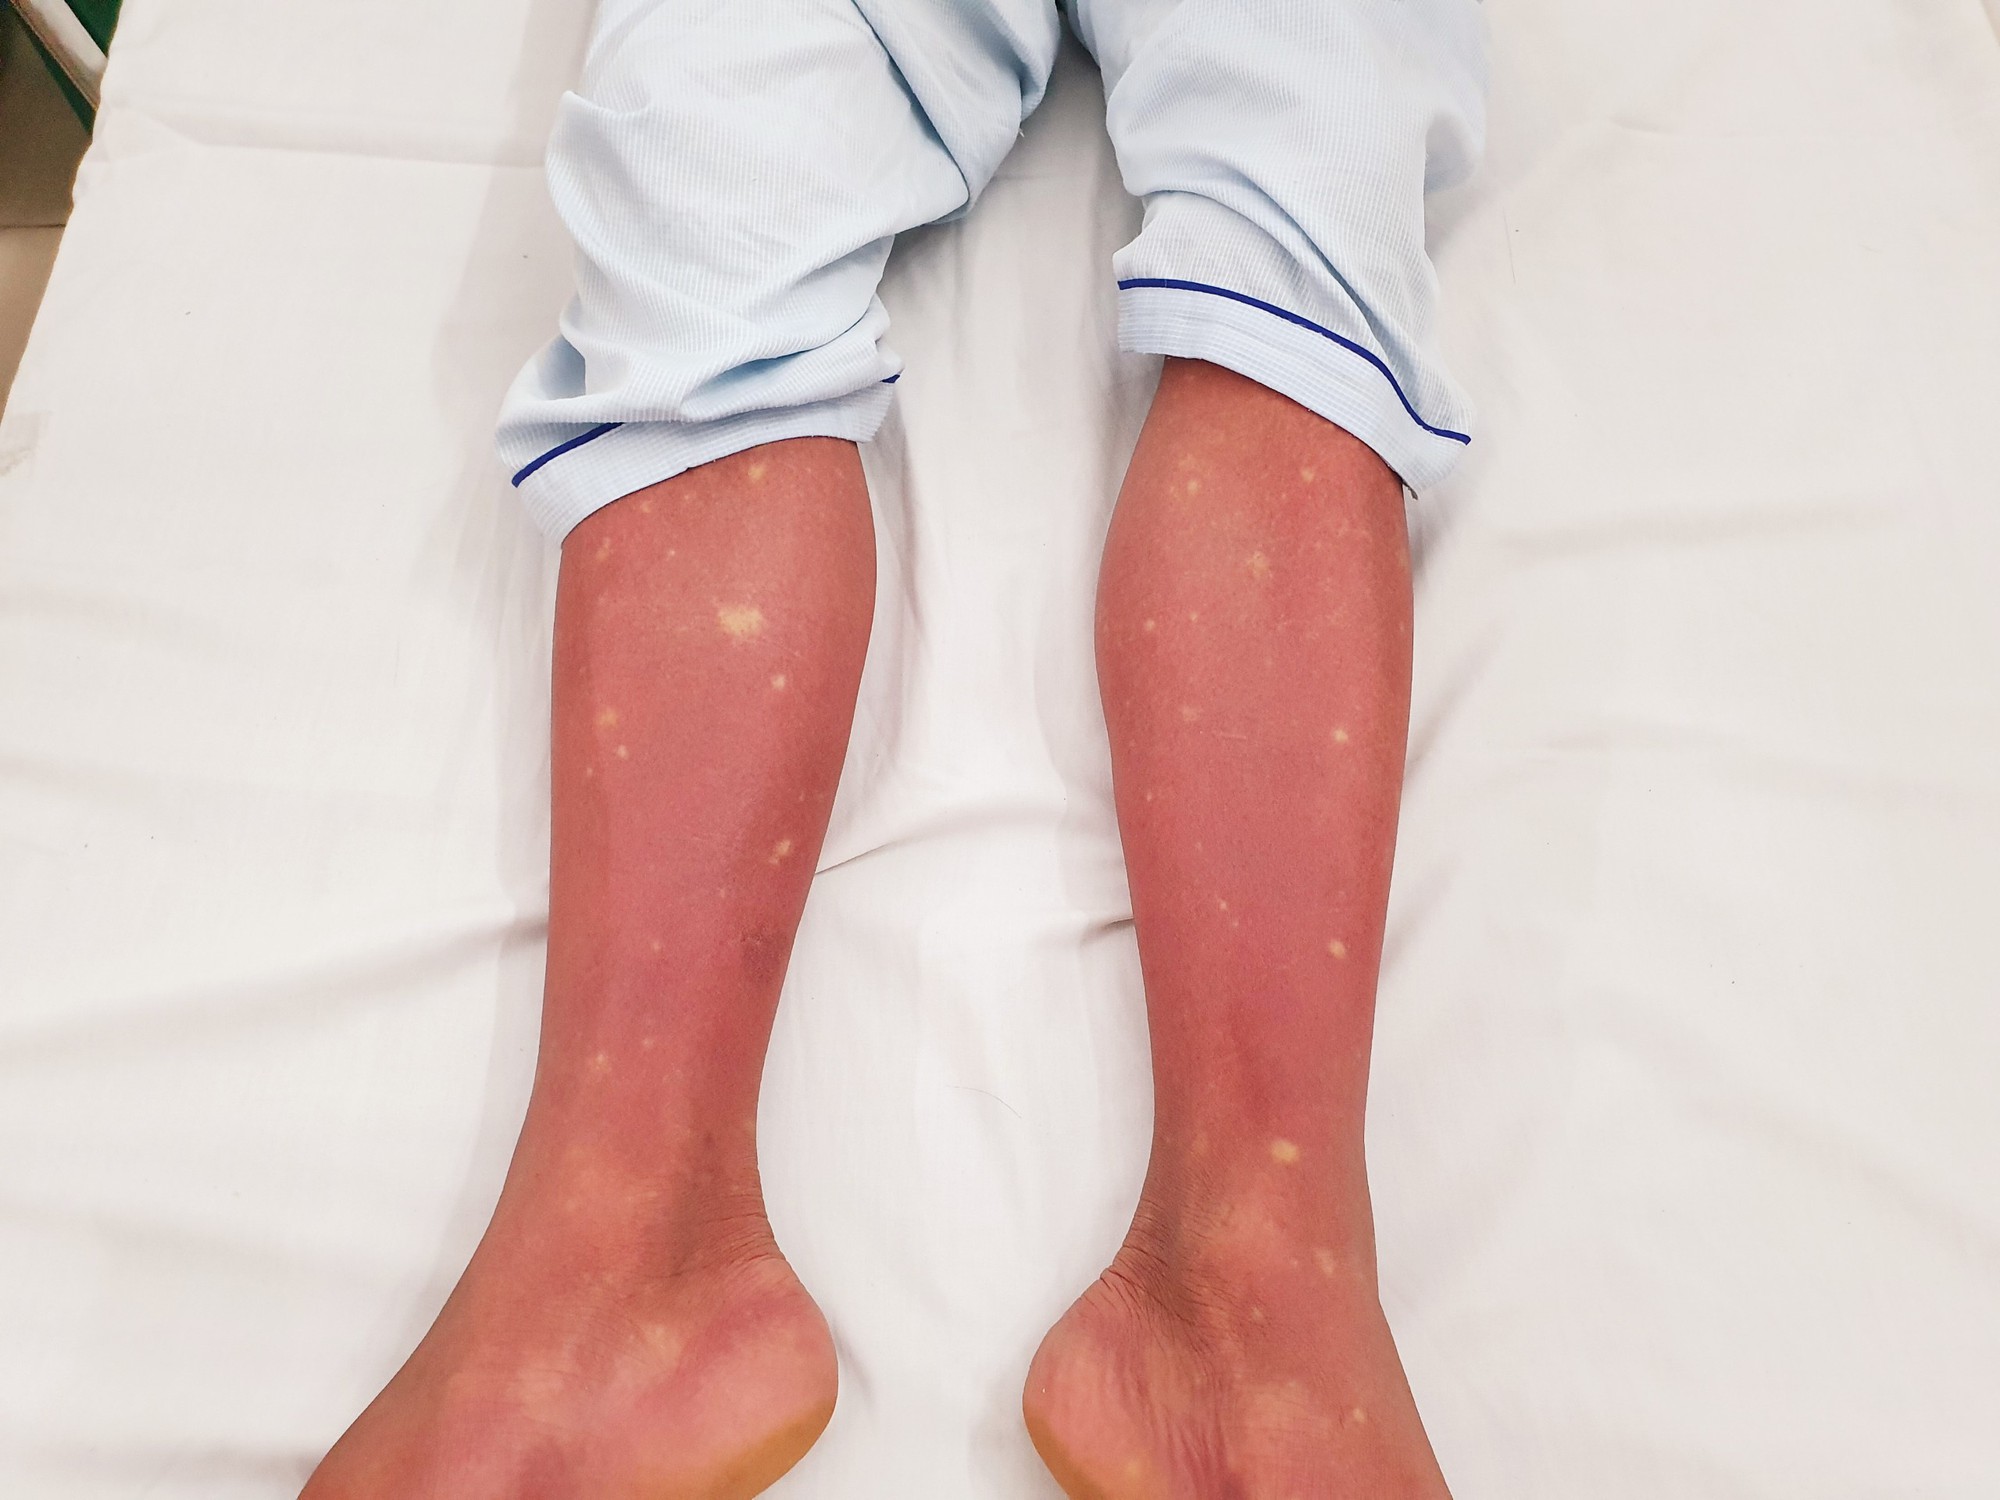  Hình ảnh xuất huyết trên chân của bệnh nhân sốt xuất huyết.